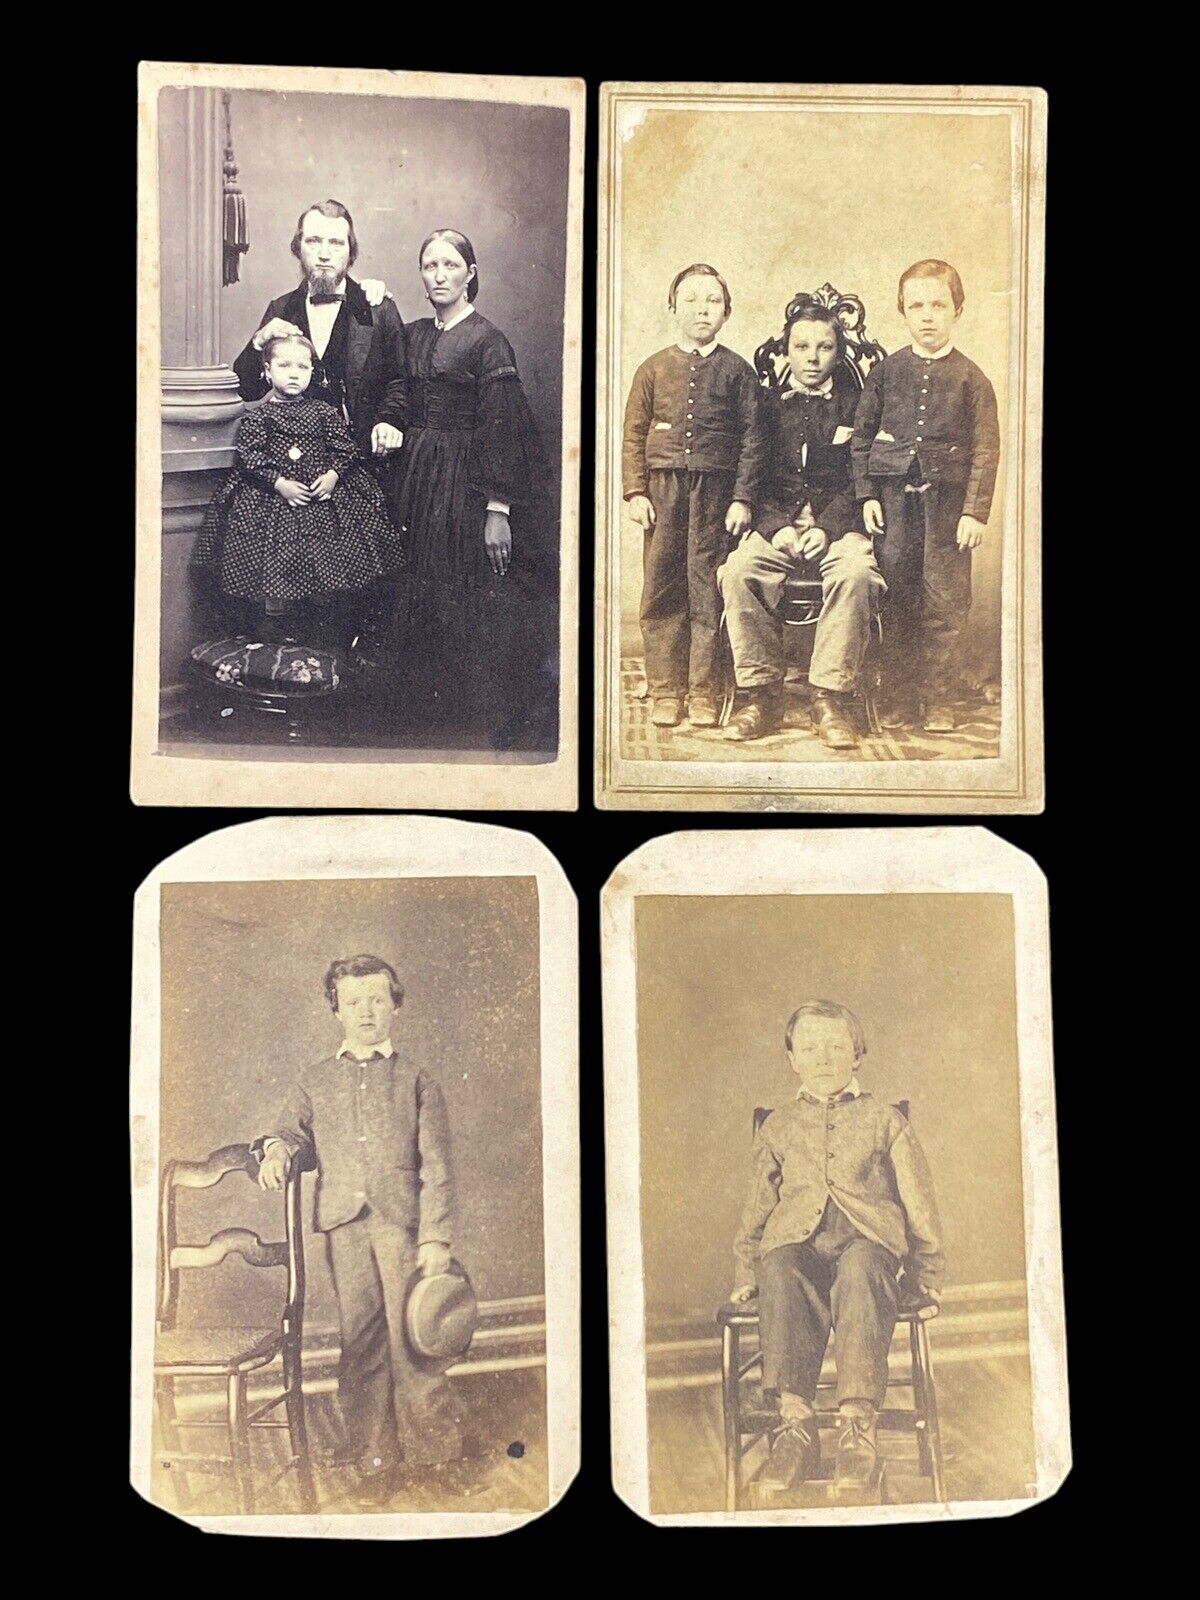 4 Antique CVD Photos 2-Cents Tax Stamp Family Portrait Children Boys